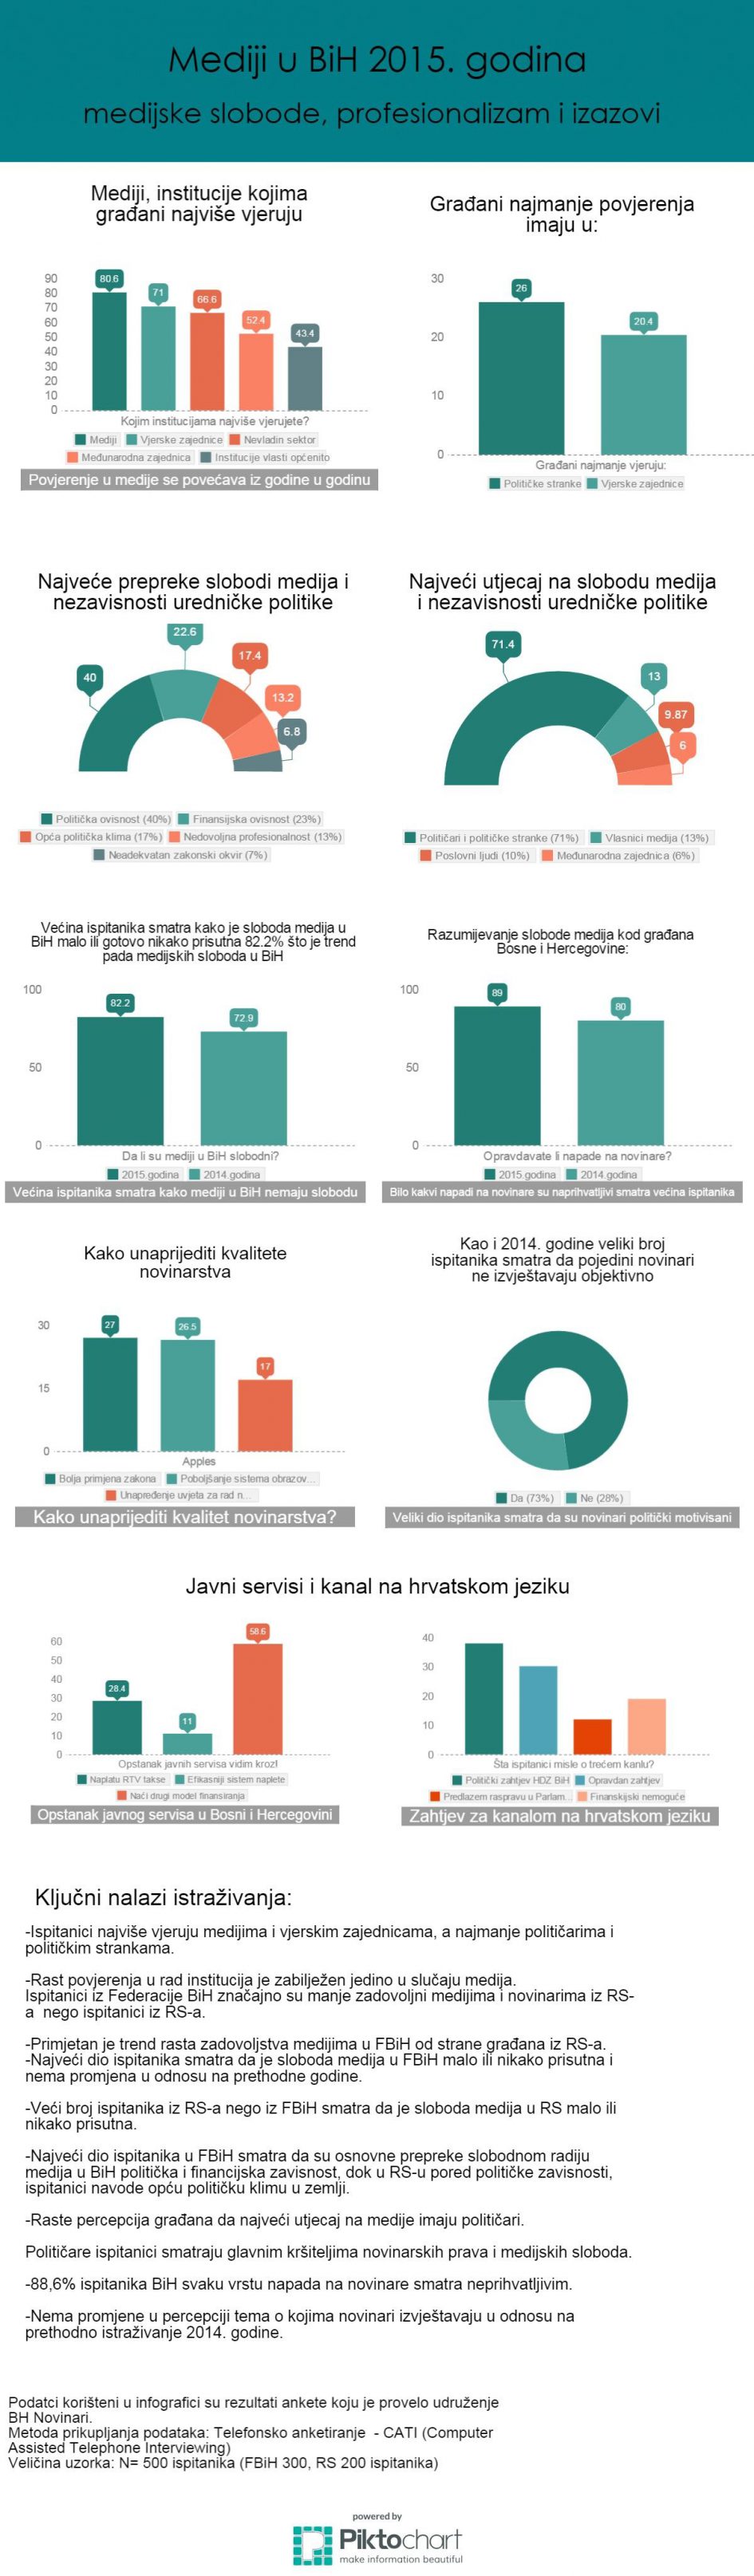 Infografika: medijske slobode, profesionalizam i izazovi u 2015.